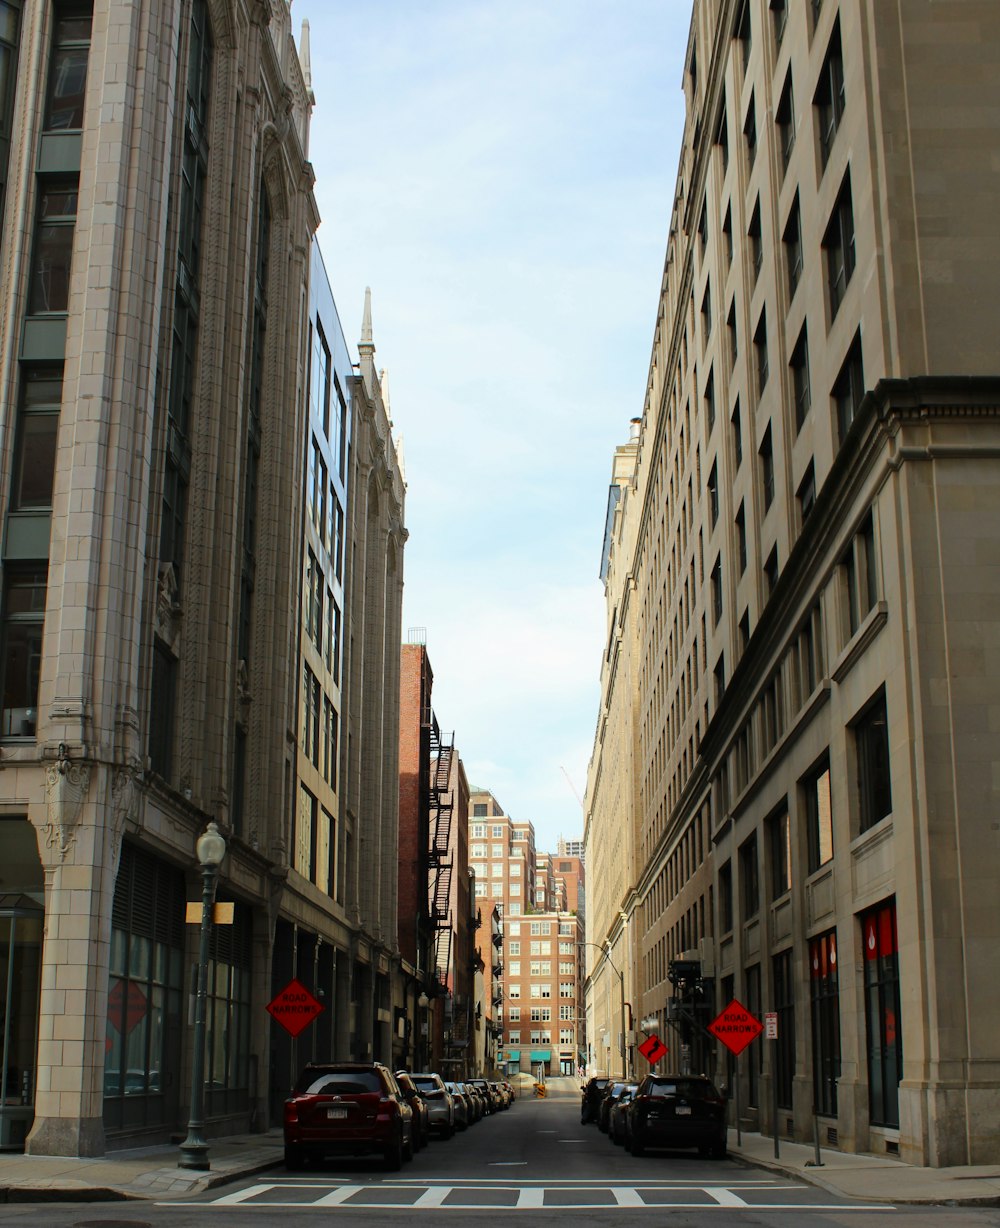 Eine Straße mit Autos und Gebäuden auf beiden Seiten